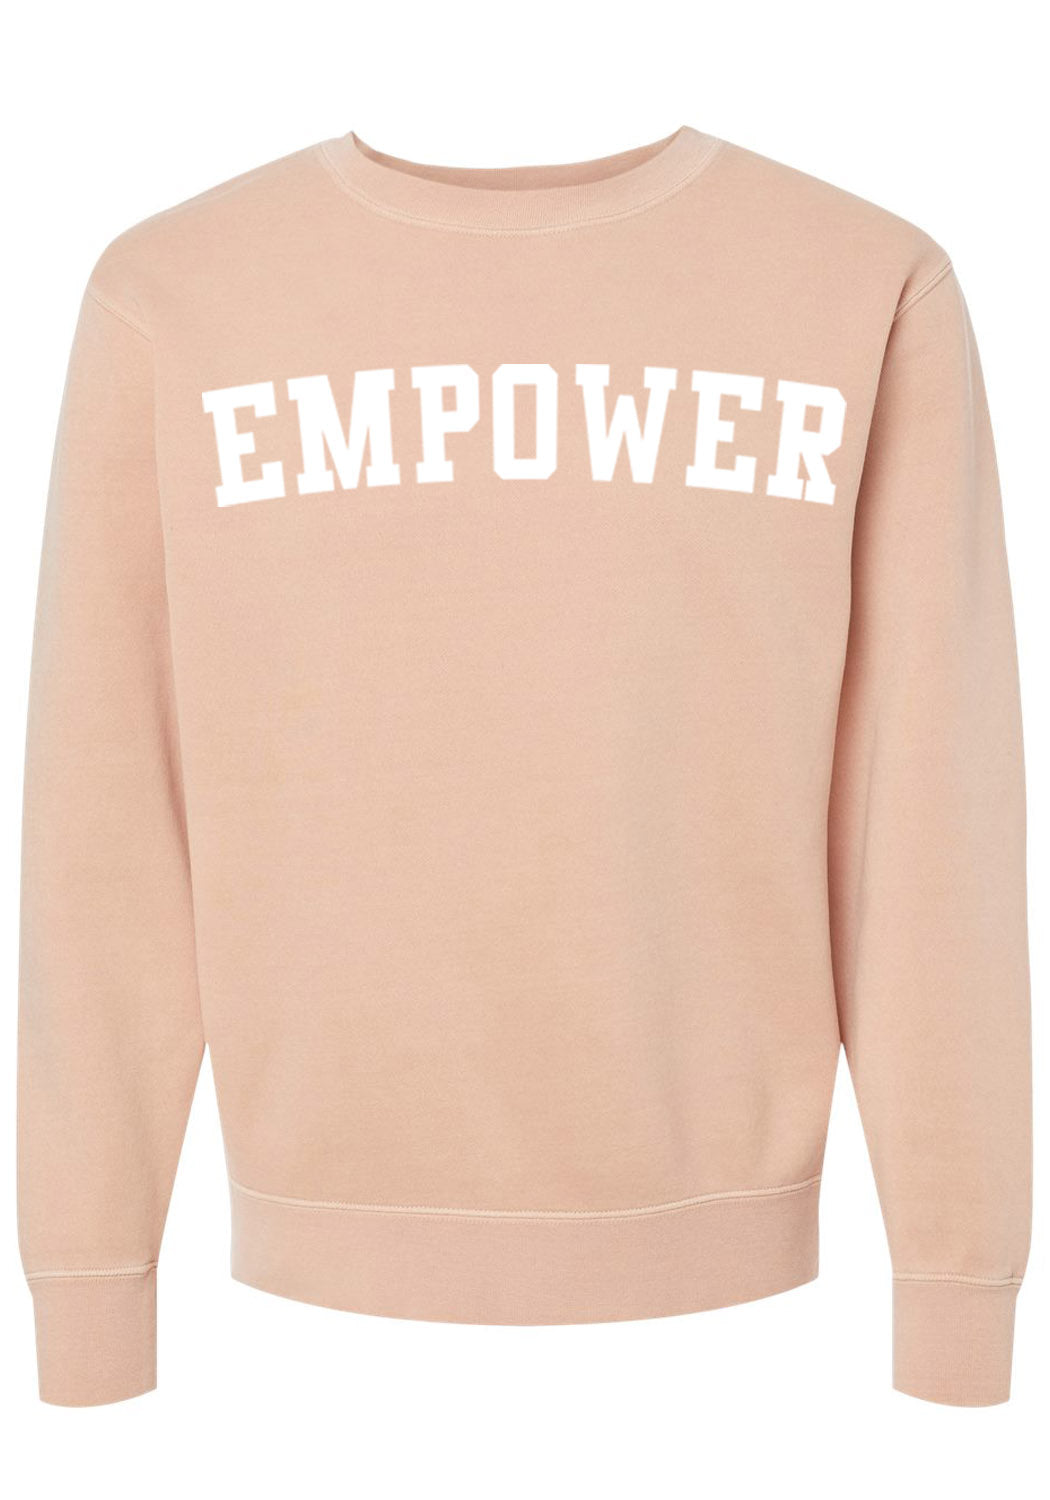 Empower Dusty Pink Crewneck Sweatshirt